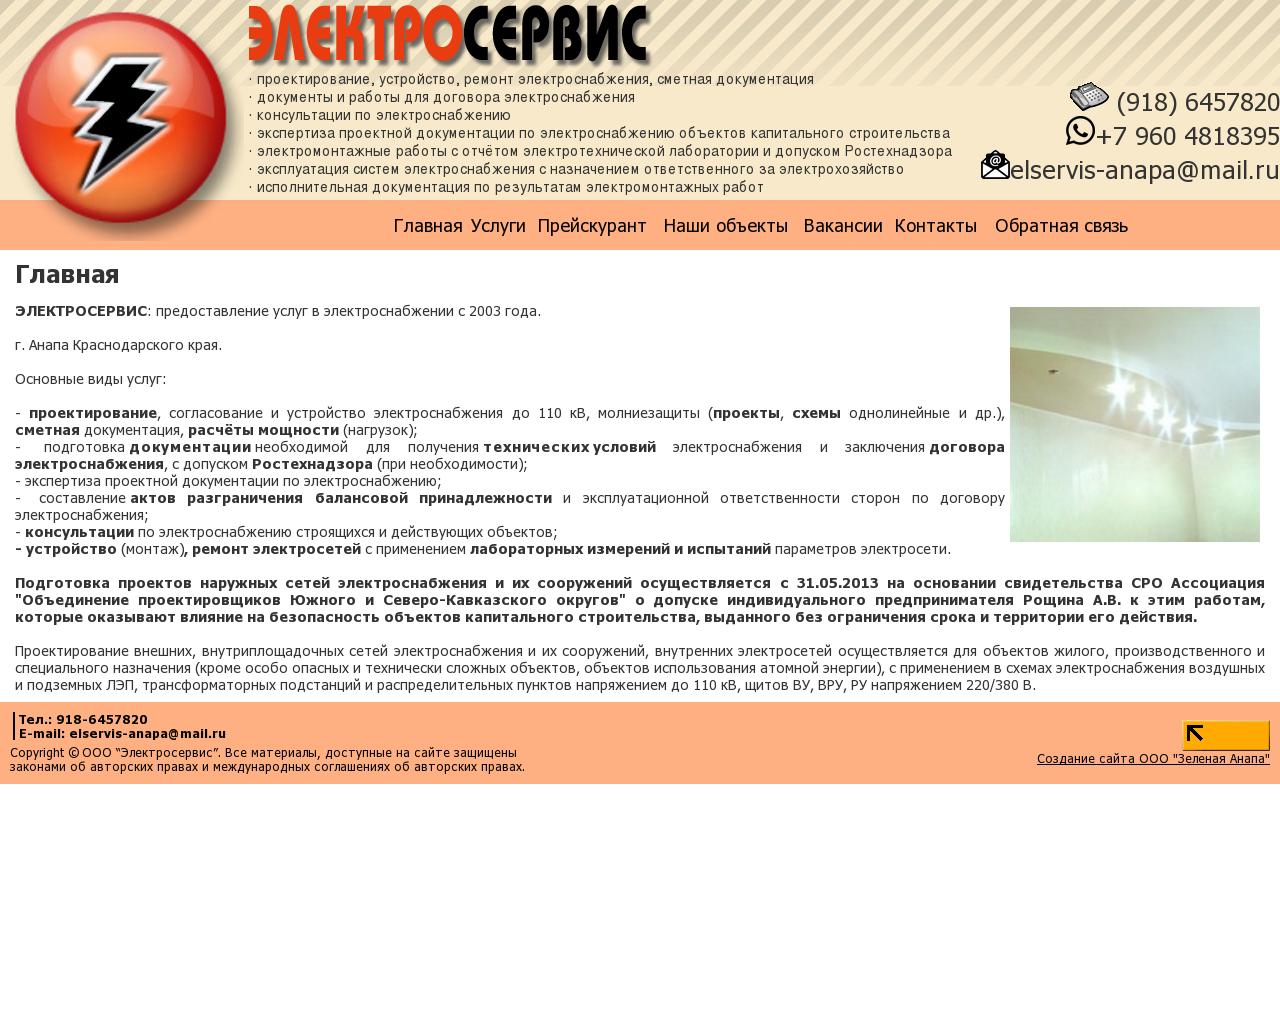 Изображение сайта электросервис-анапа.рф в разрешении 1280x1024